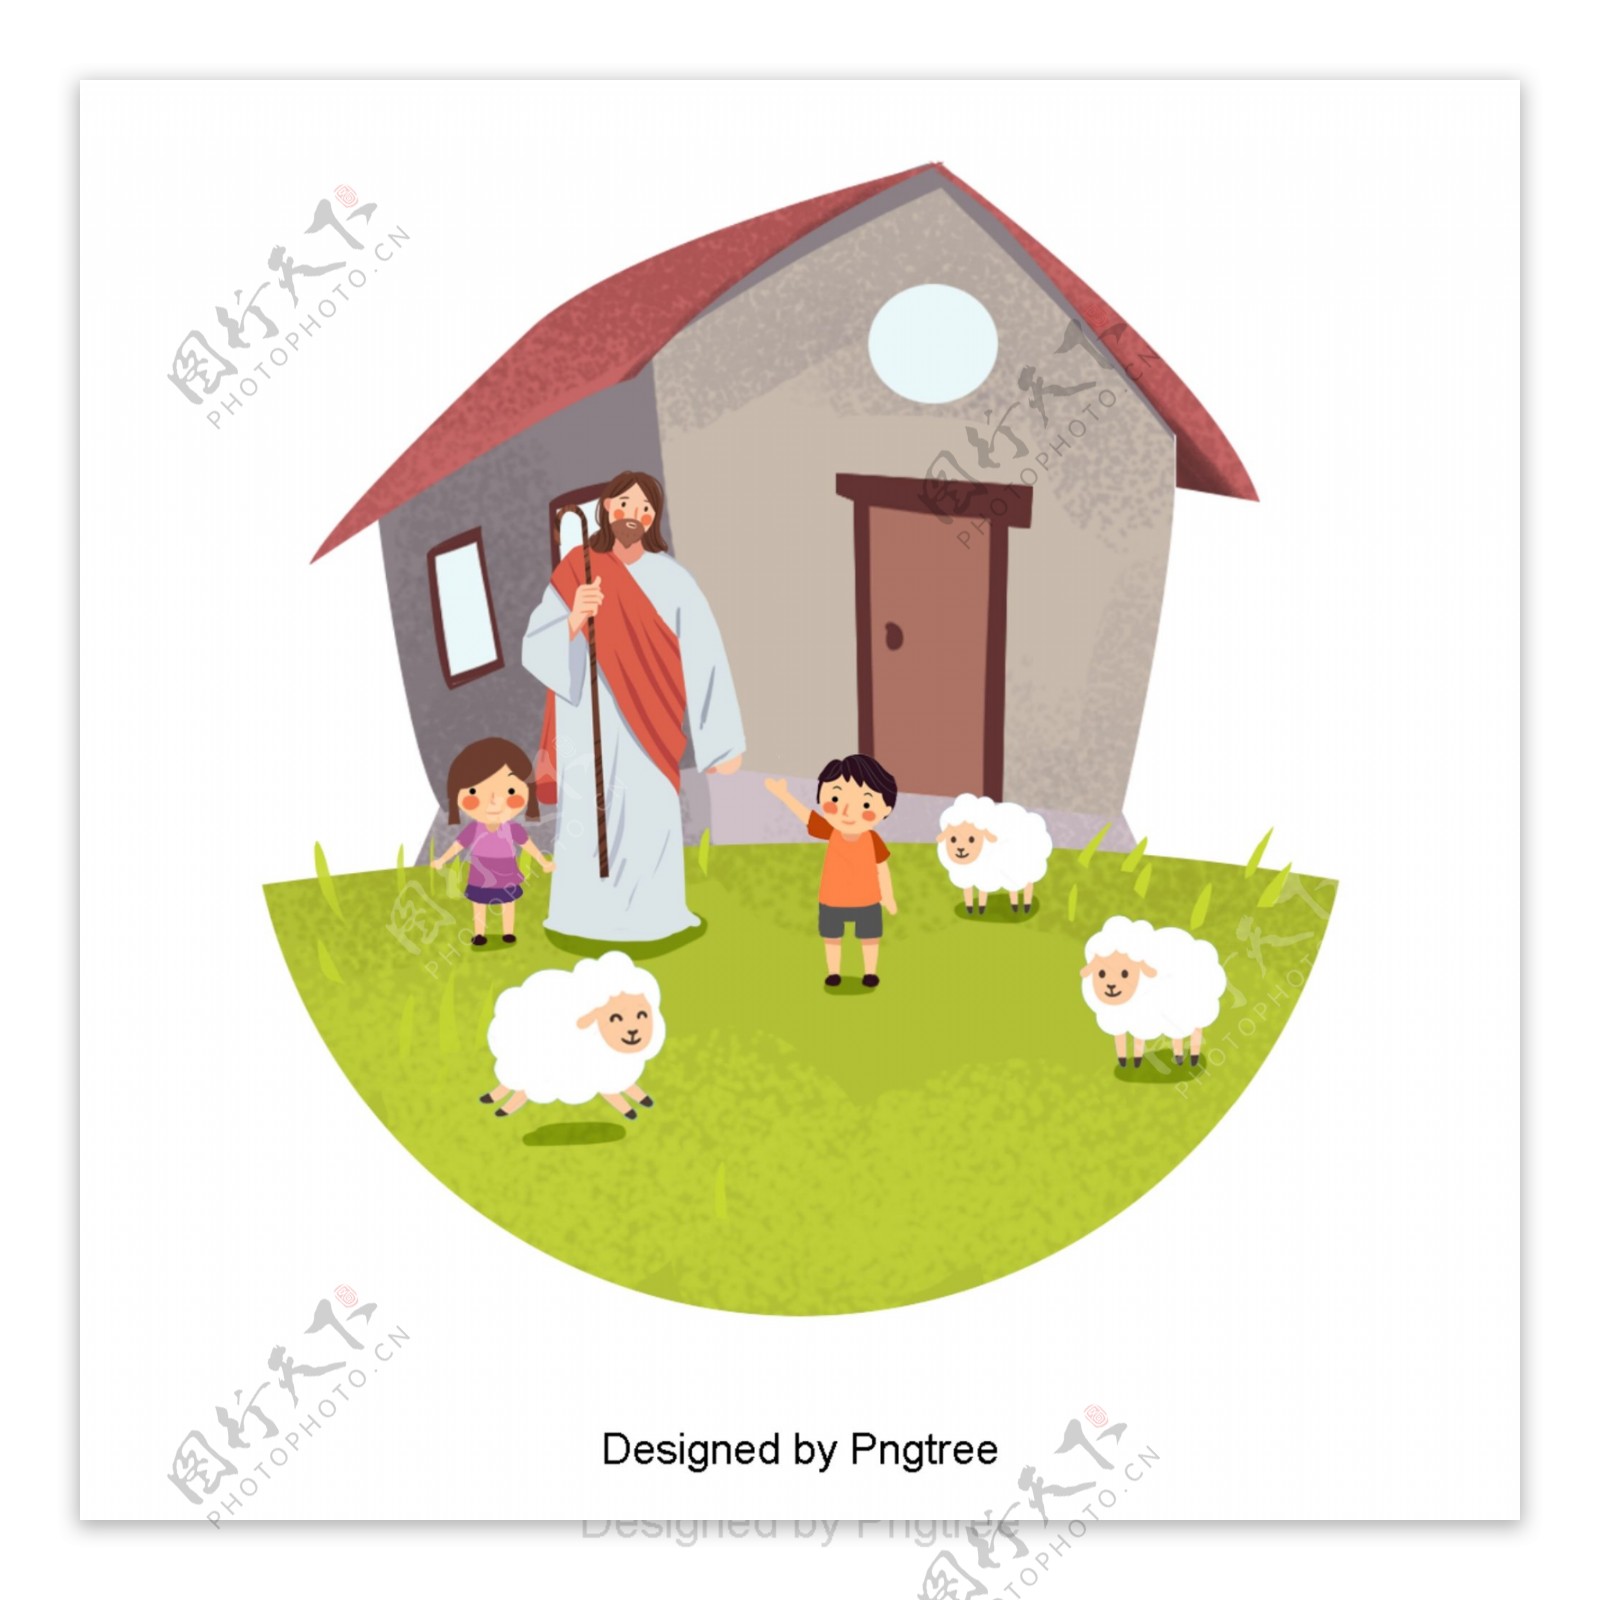 可爱的手绘耶稣和两个孩子养羊为生